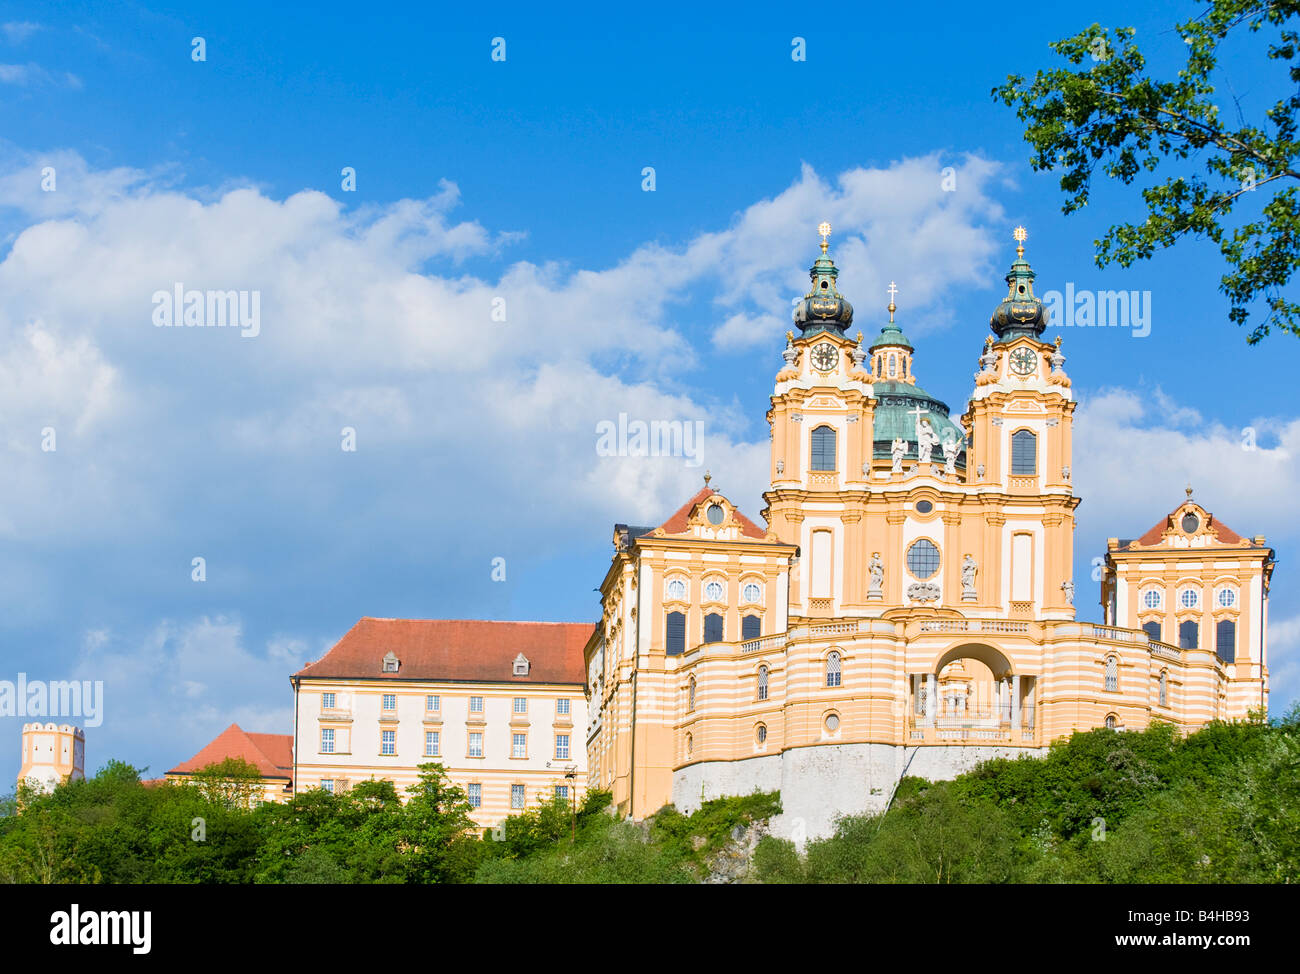 Low angle view of abbey, Stift Melk, Wachau, Lower Austria, Austria Stock Photo